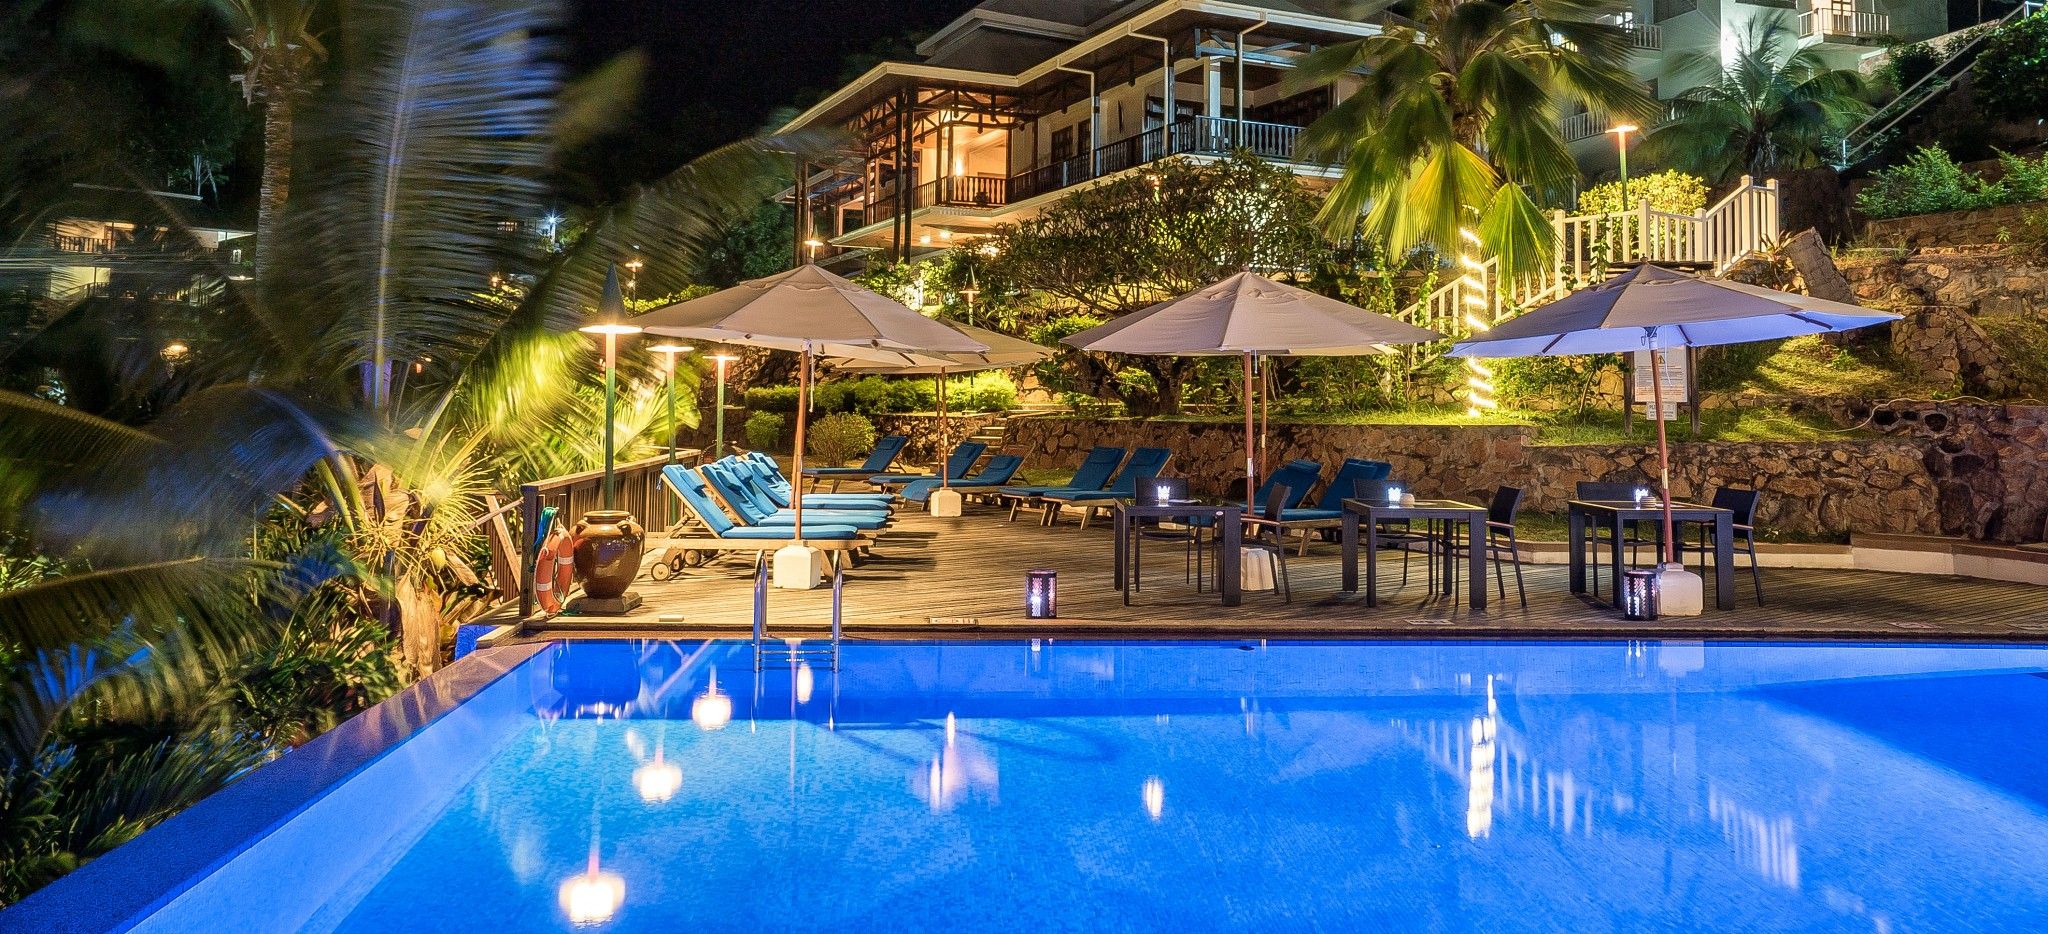 Poolbereich des Hotels l'Archipel auf den Seychellen, bei Nacht